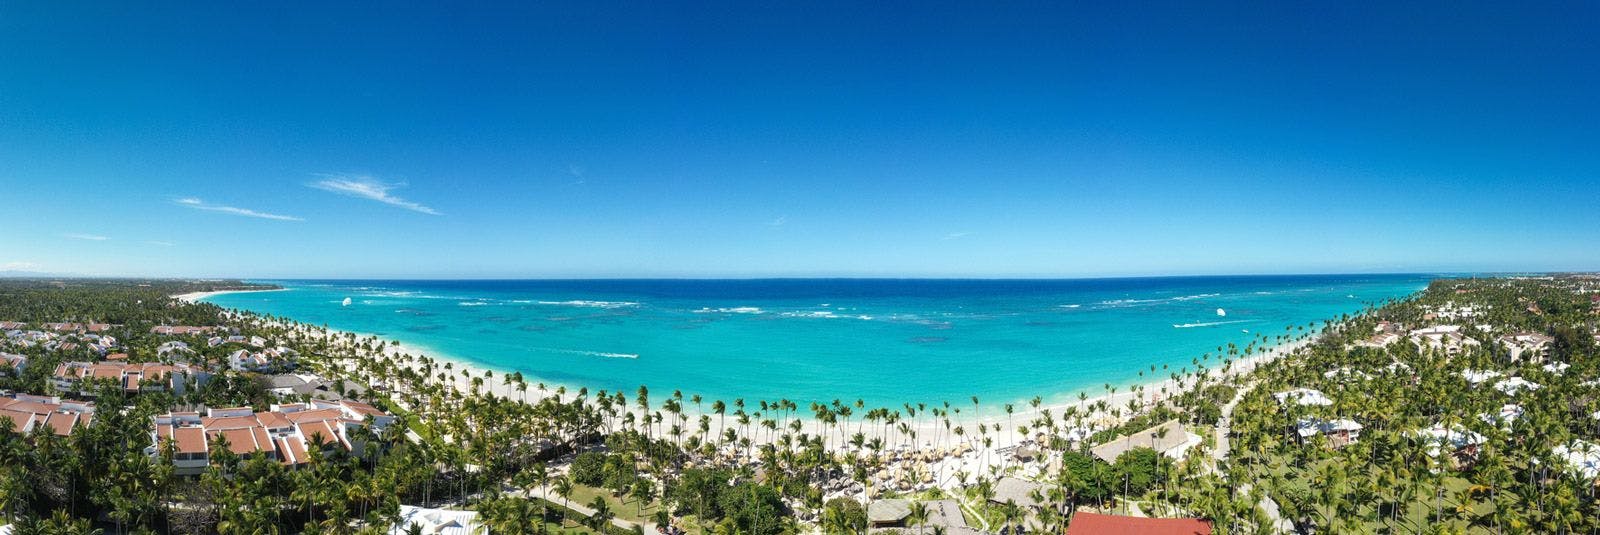 Panorama of beach at Punta Cana